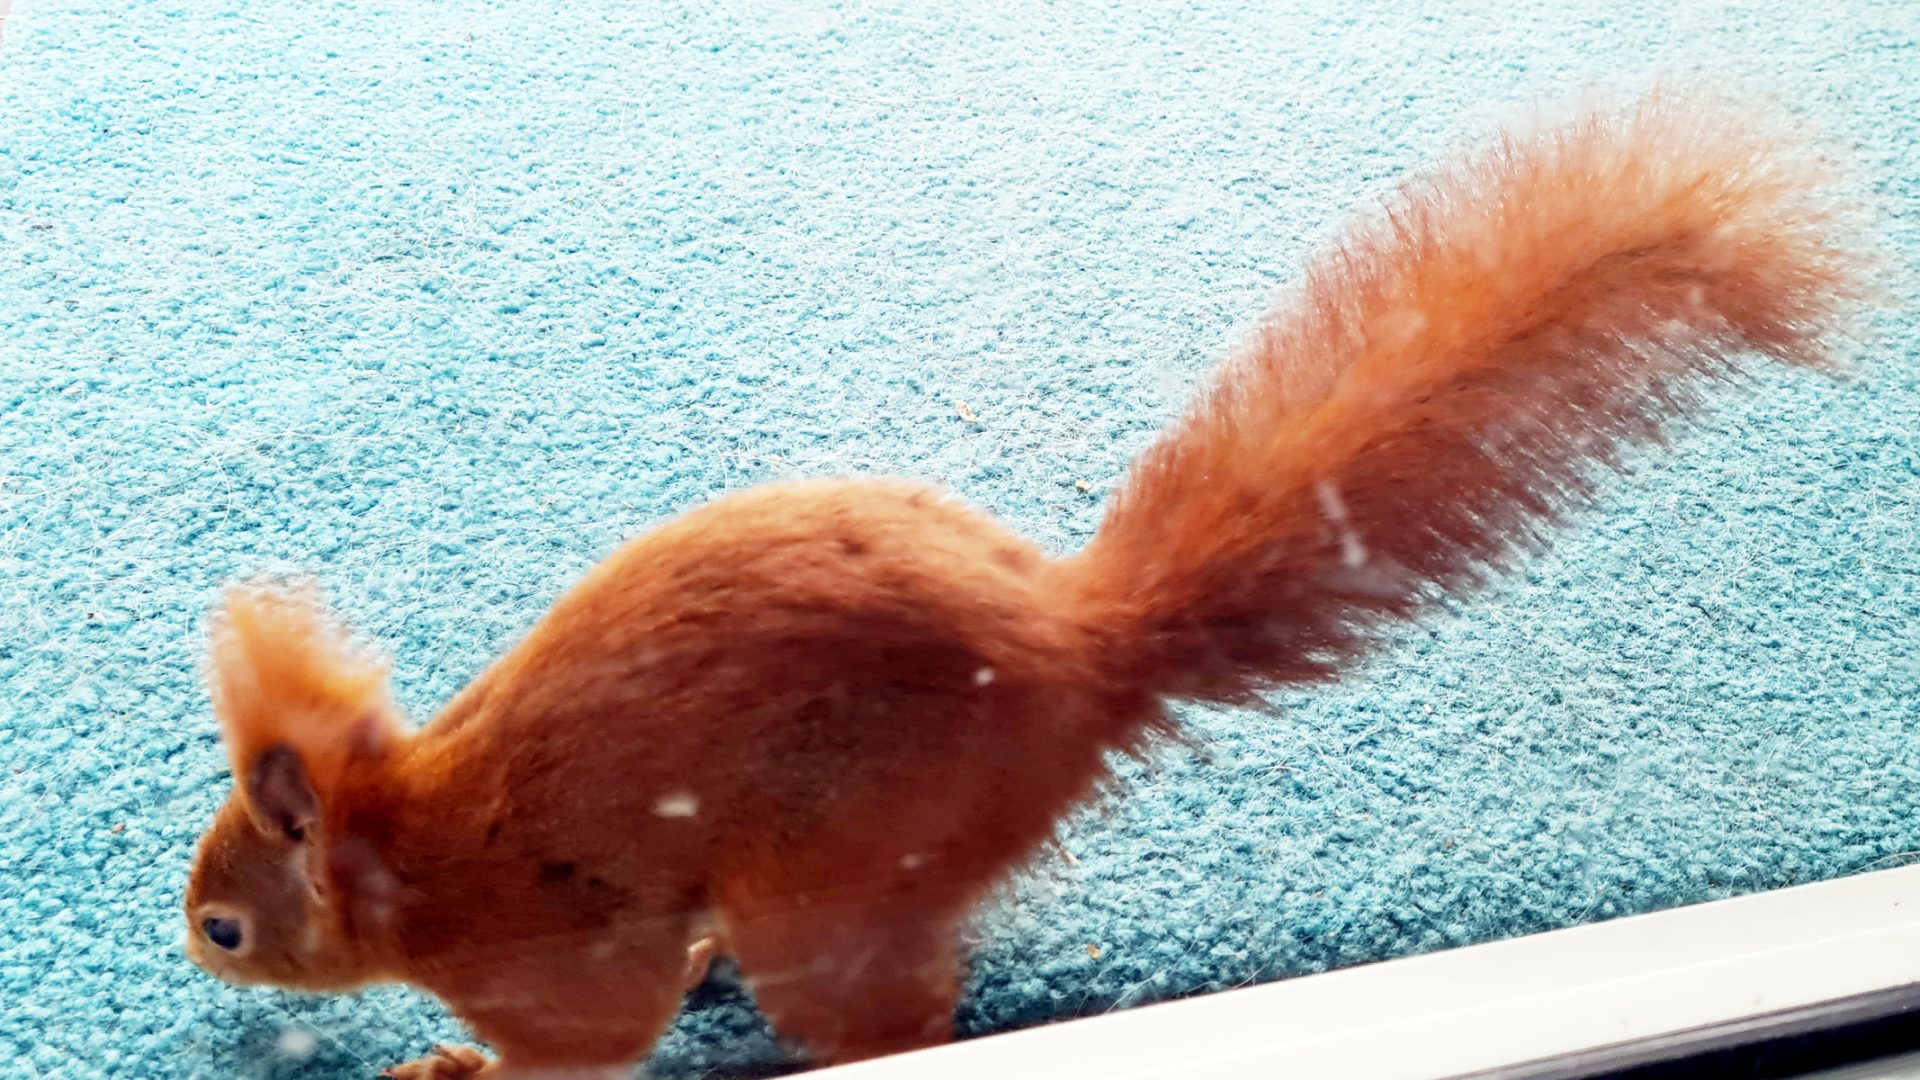 Eichhörnchen auf einem türkis-petrolfarbenen Teppich scheint Futter zu suchen